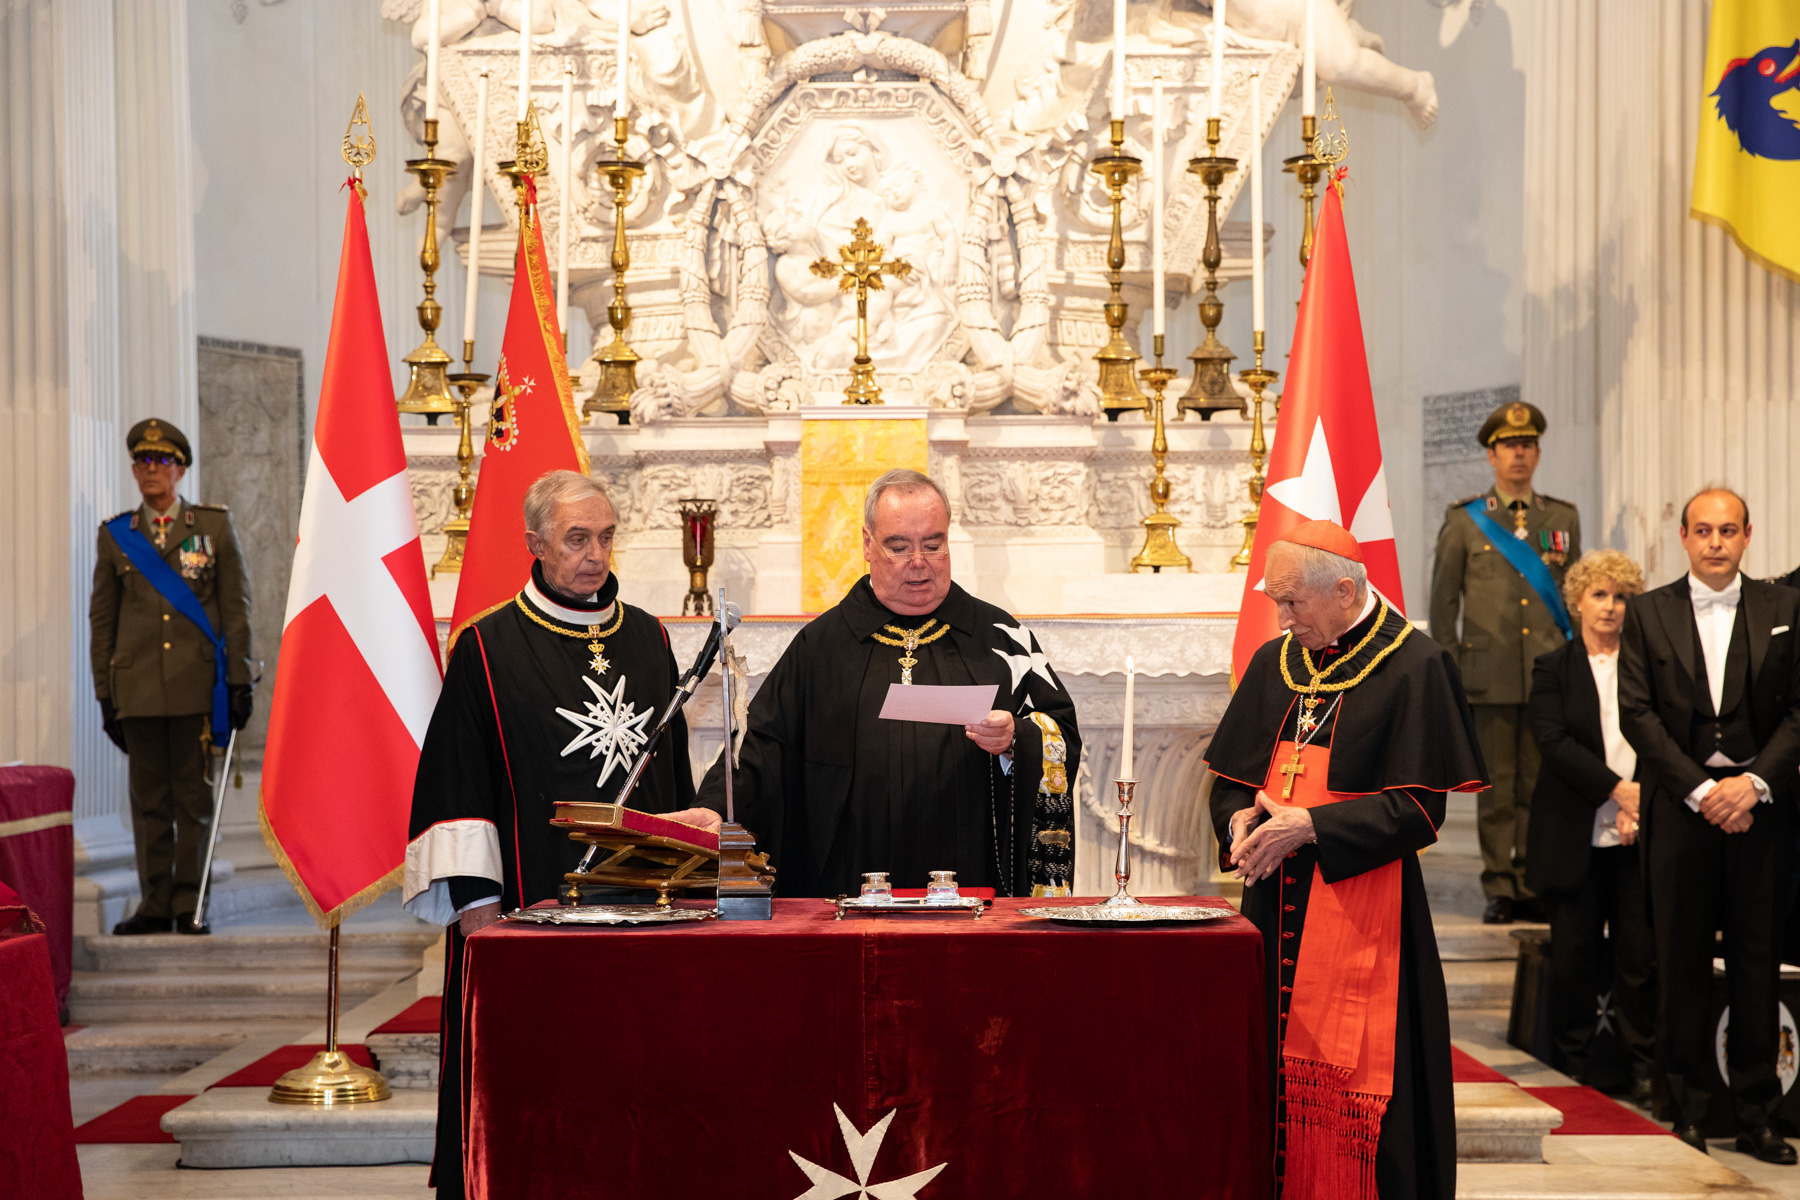 Fra’ John Dunlap è l’81° Gran Maestro dell’Ordine di Malta